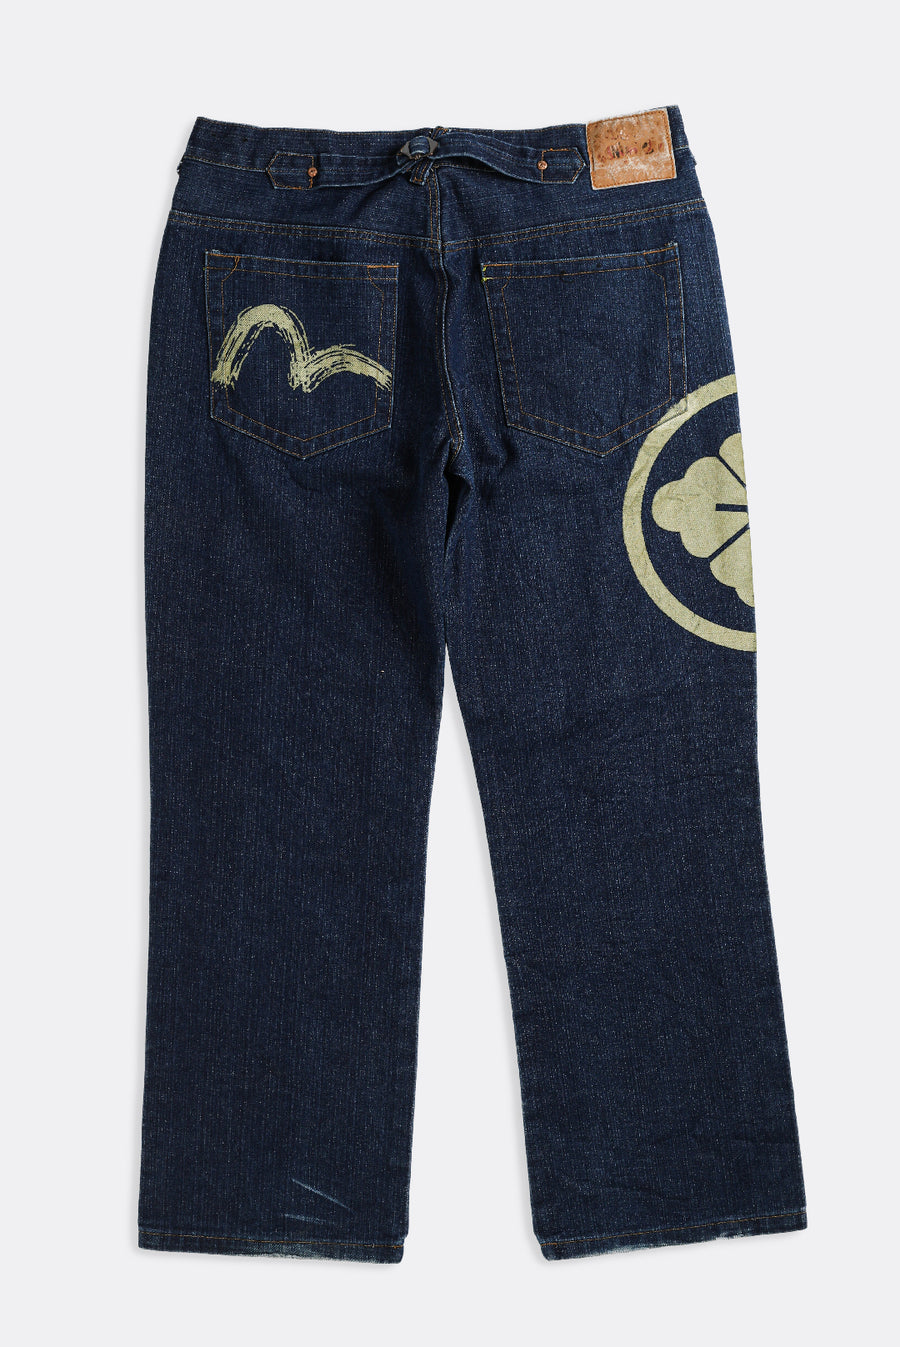 Vintage EVISU Denim Pants - W38